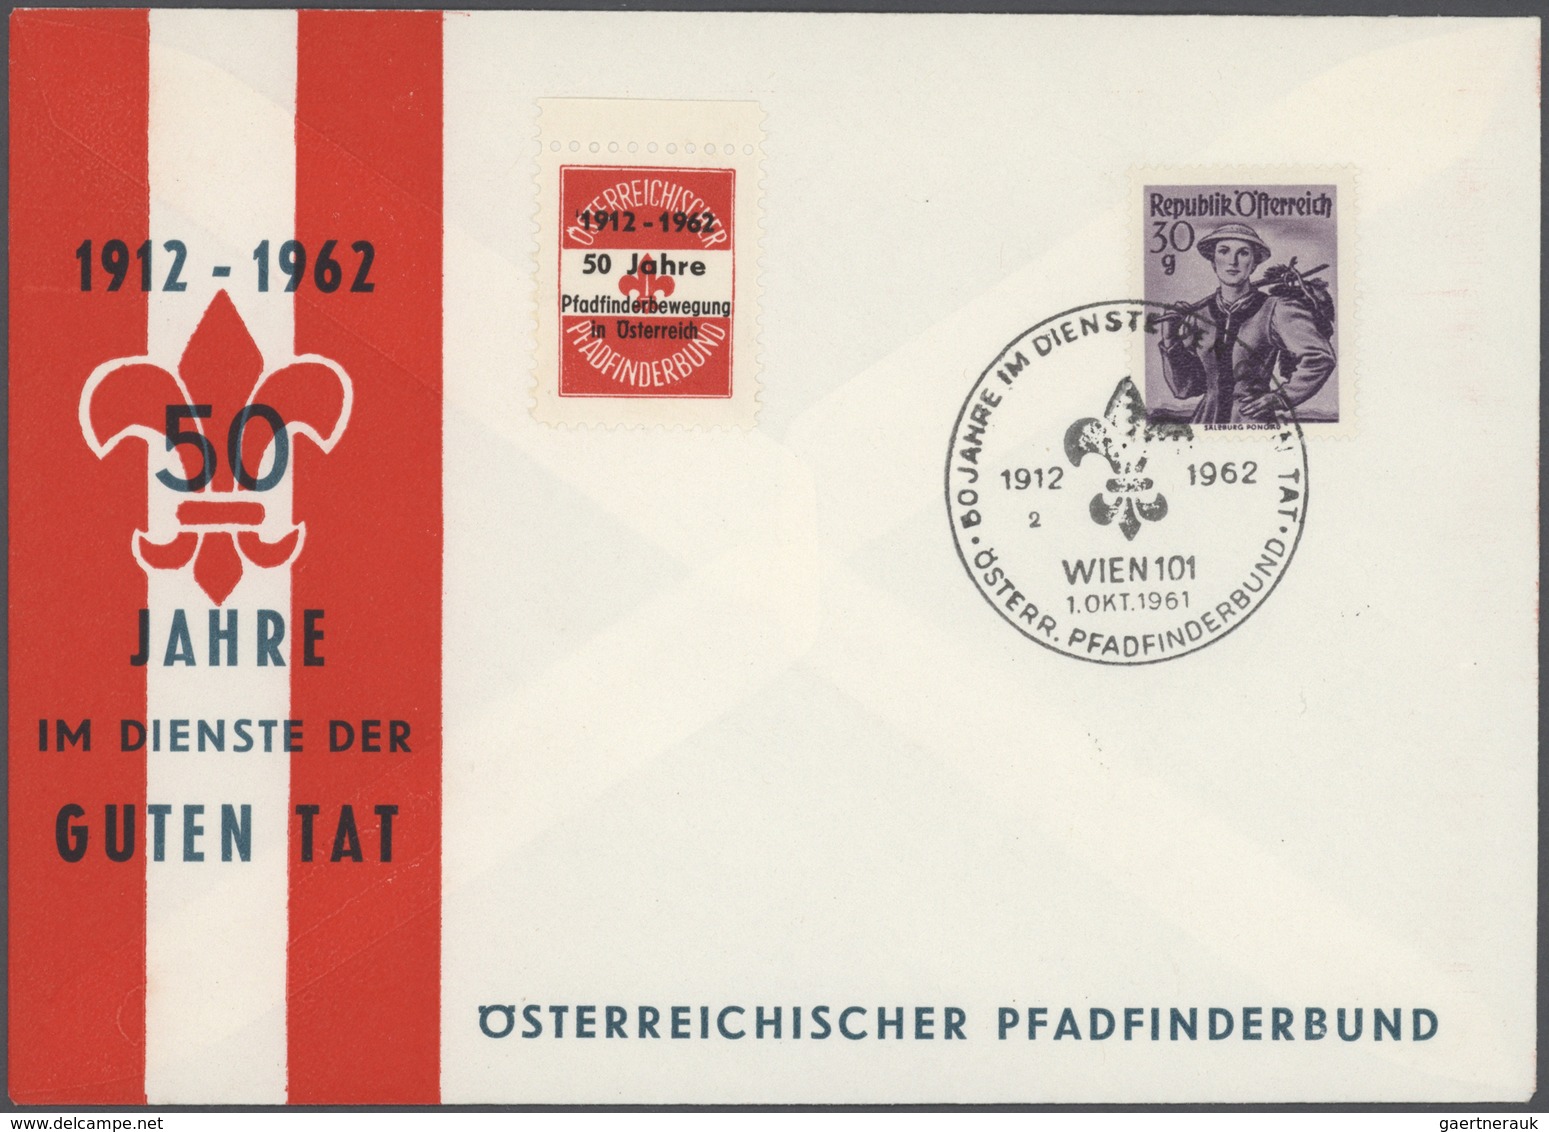 Österreich - Sonderstempel: 1945/1978, sehr reichhaltige und attraktive Sammlung der Sonderstempel d